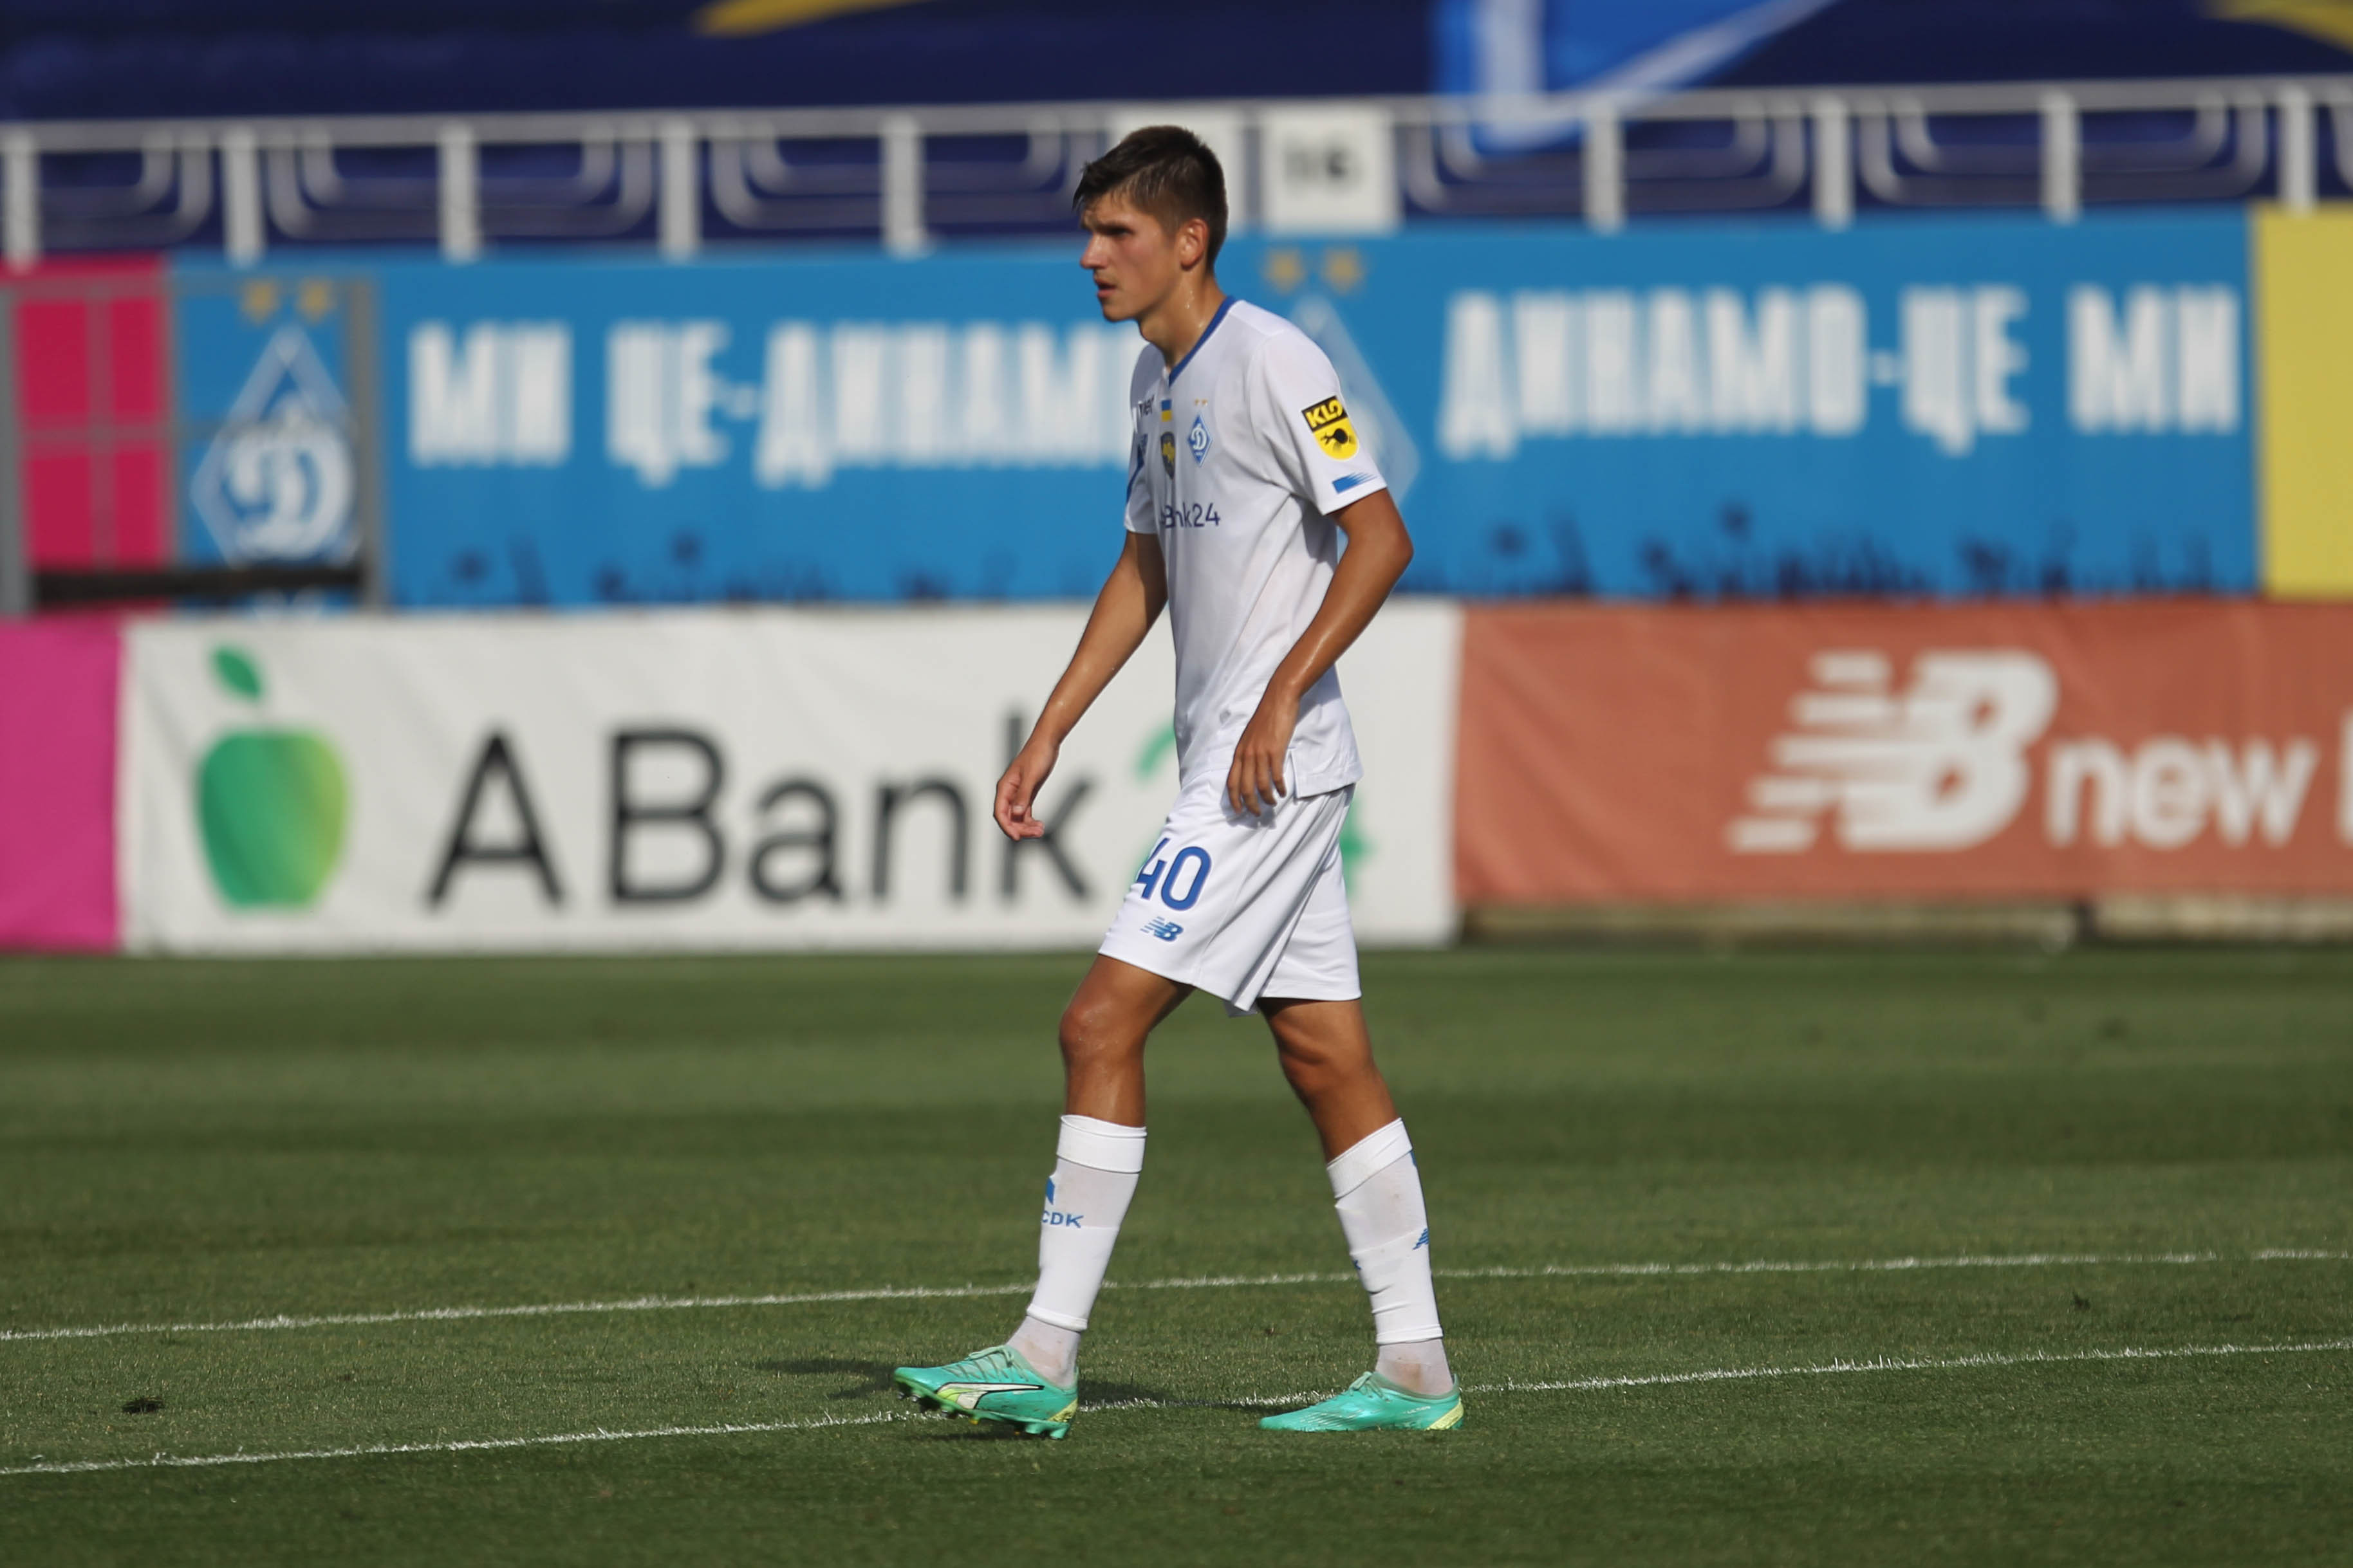 Kristian Bilovar makes official debut for Dynamo